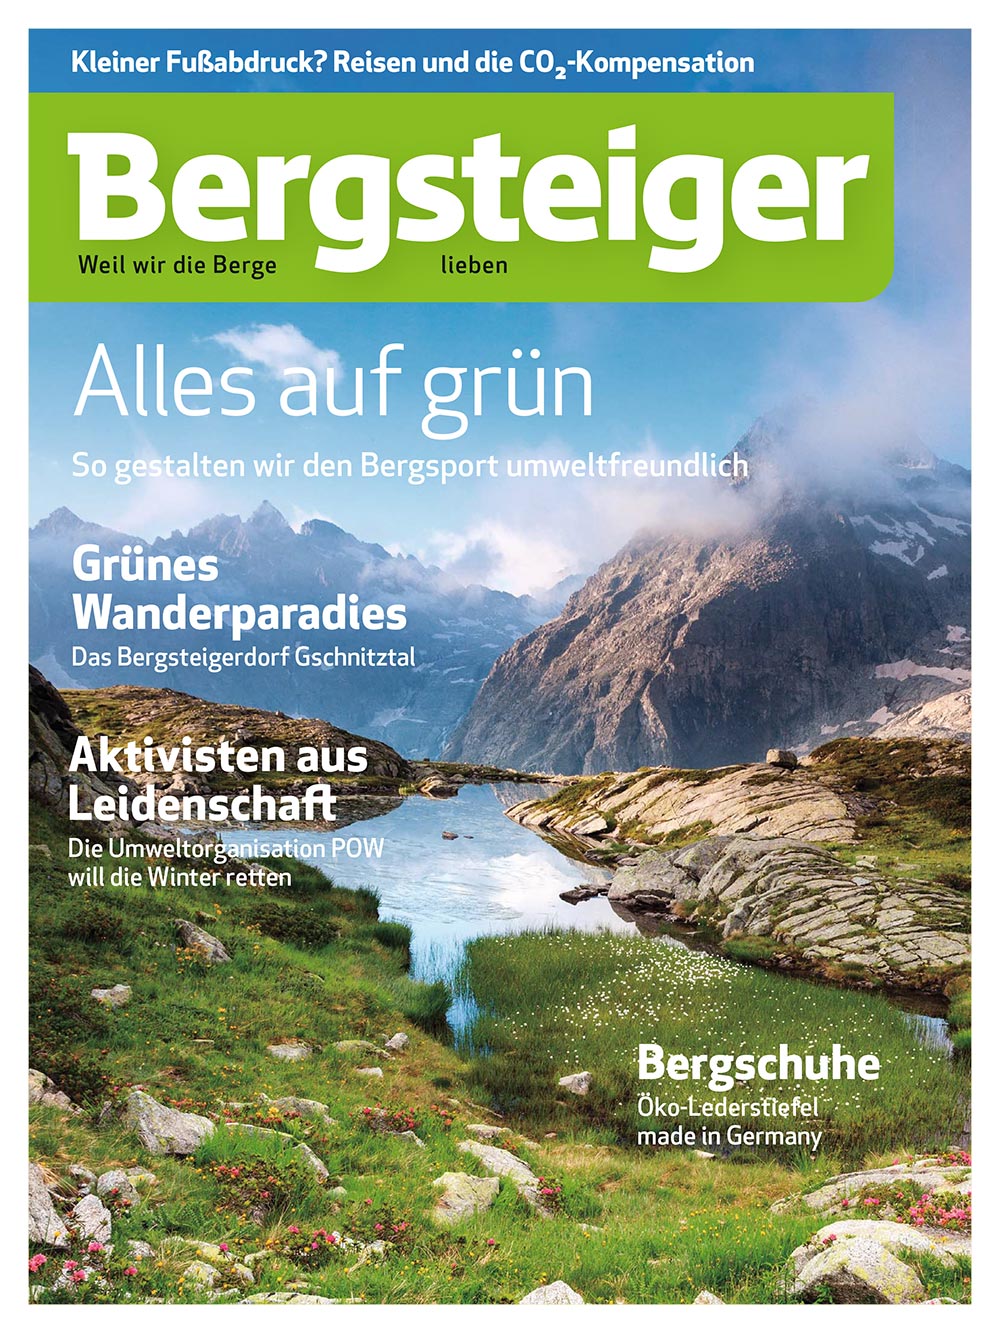 "Tout en vert" dans Bergsteiger Magazin